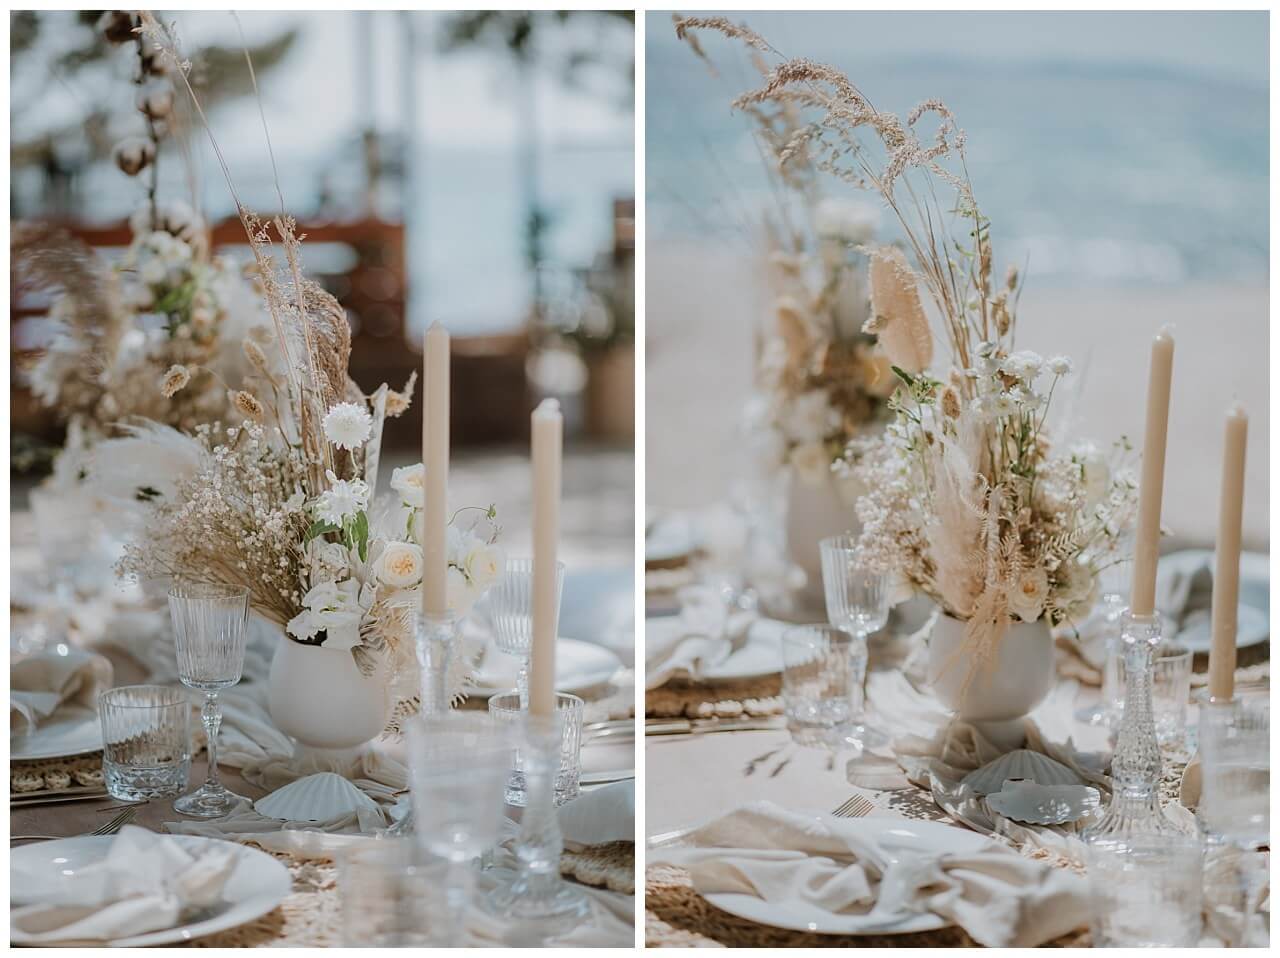 Boho Tischdekoration in beige weiß bei einer Hochzeit am Strand in Kroatien